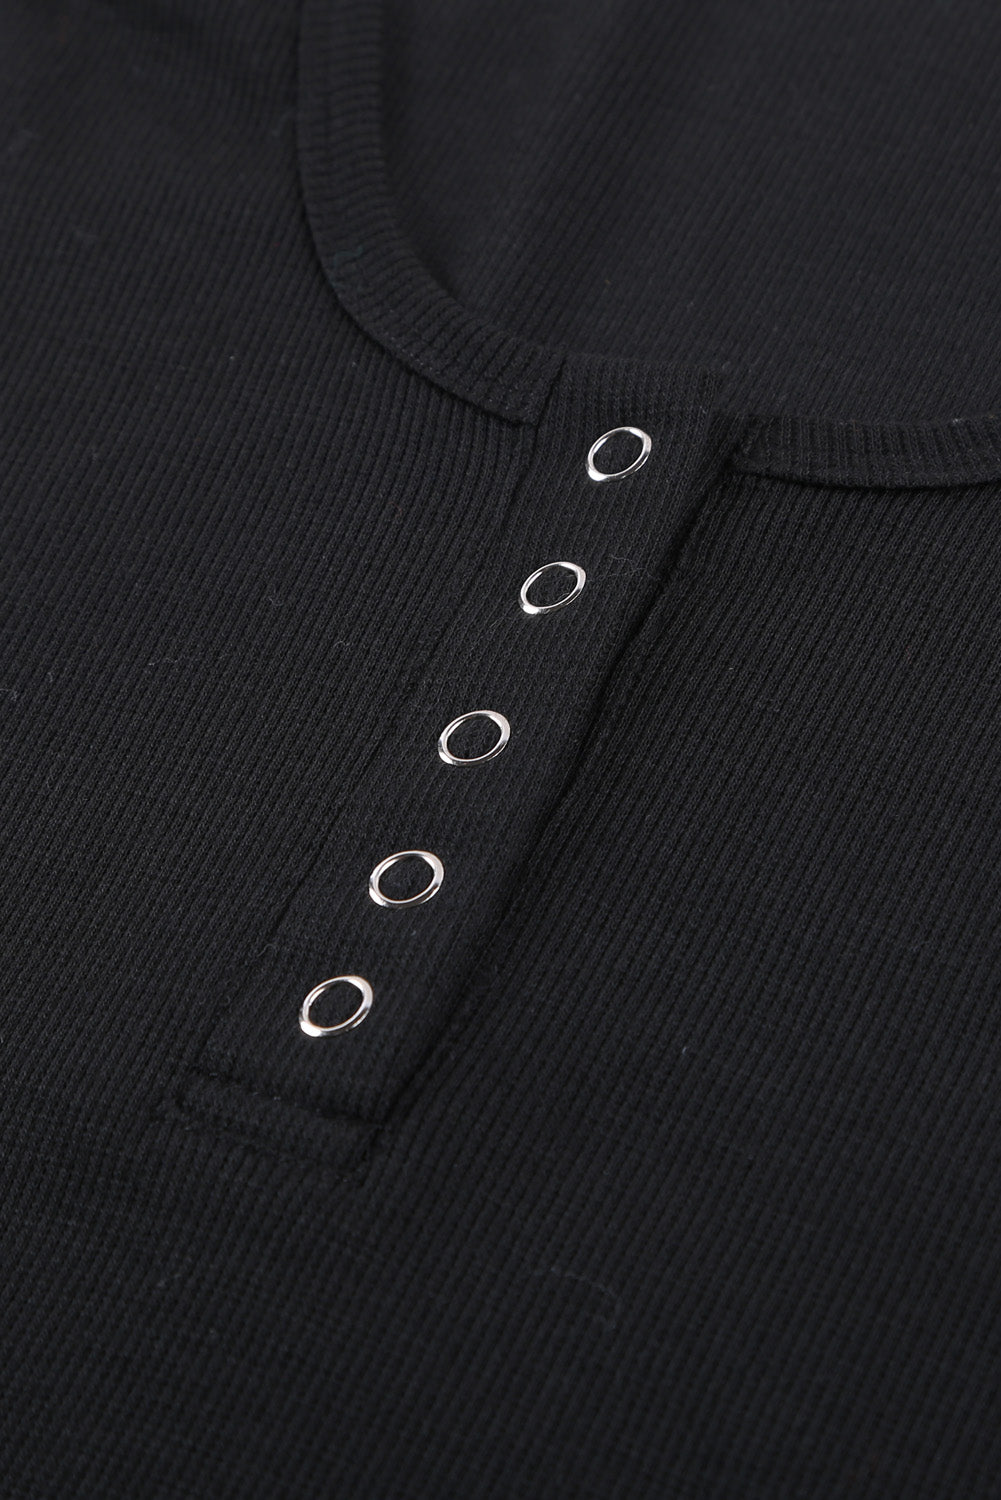 Crna majica bez rukava s dugmadima i širokim izrezom